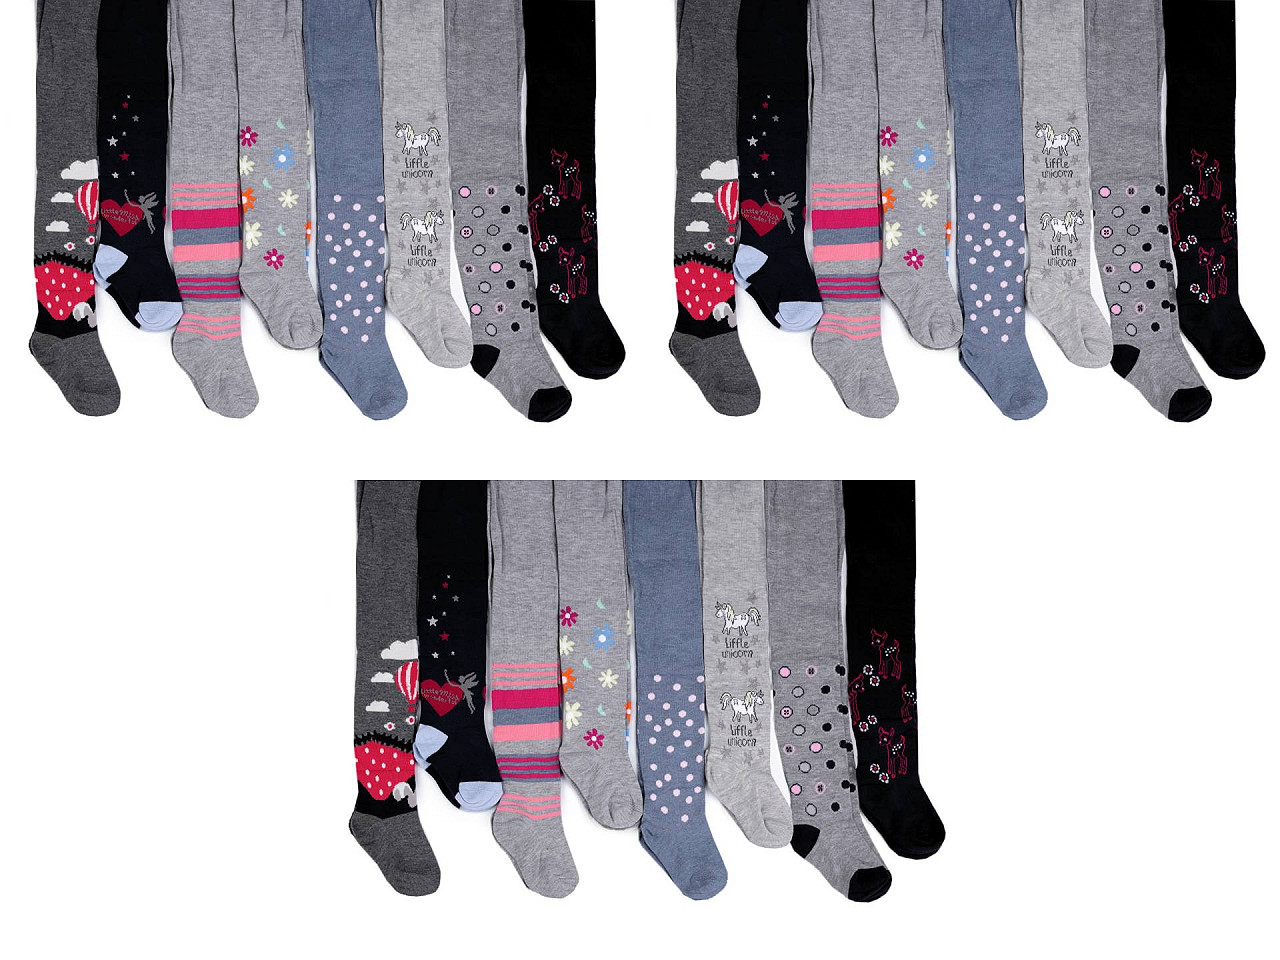 Ciorapi pentru fete, Mărime: 116 - 122, culoare aleatorie, 1 buc